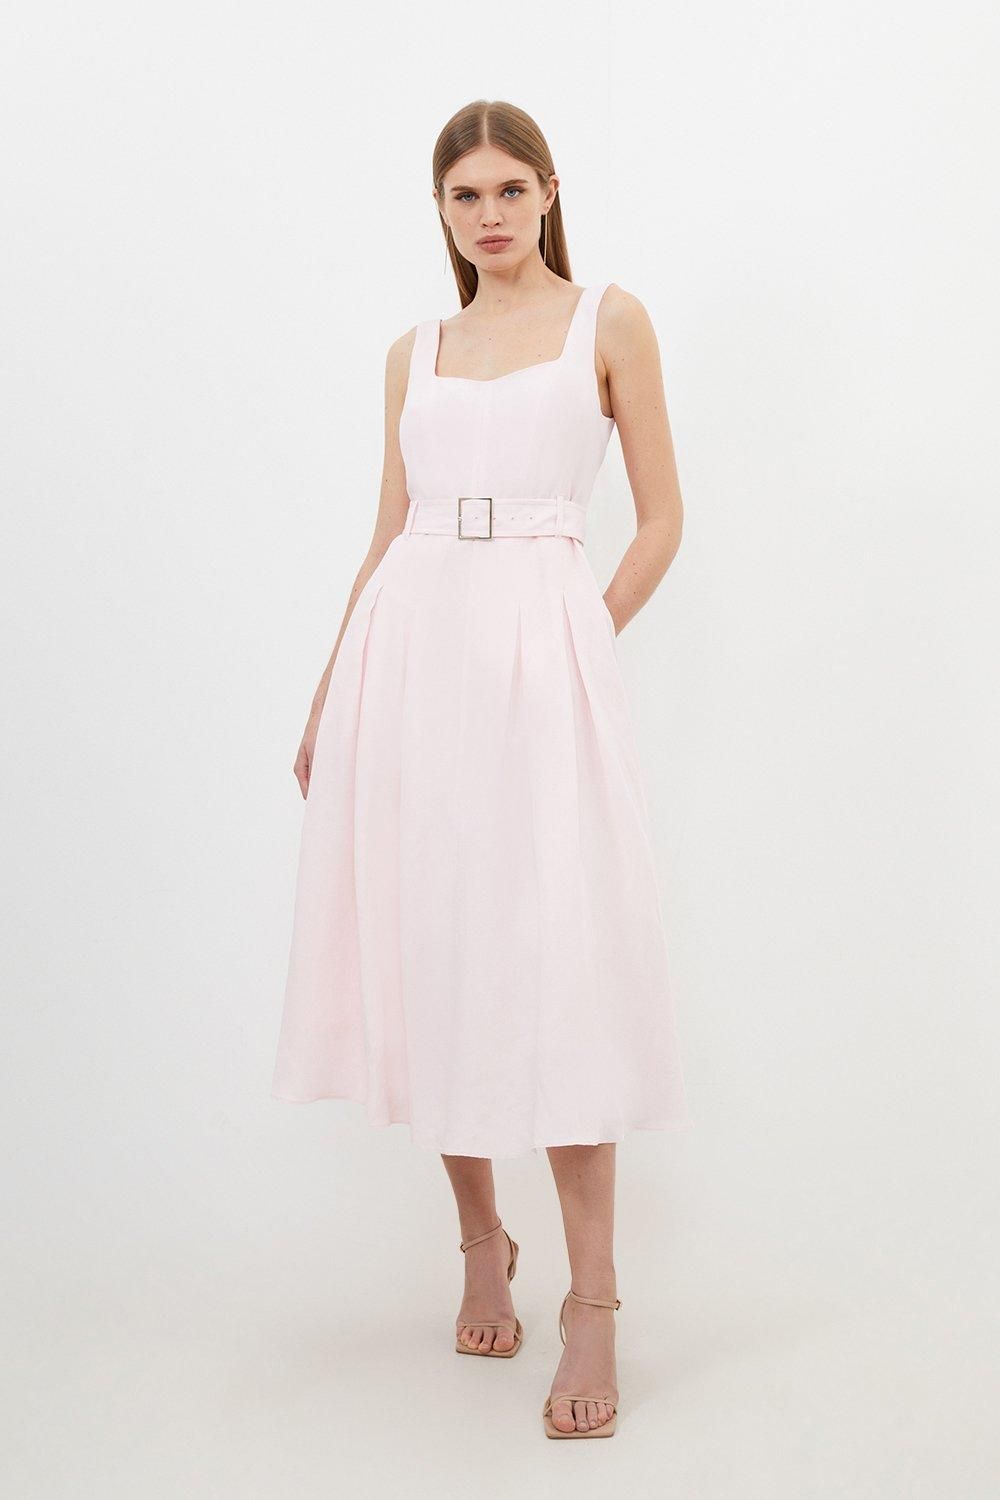 Petite Premium Tailored Linen Square Neck Belted Midi Dress | Karen Millen UK + IE + DE + NL